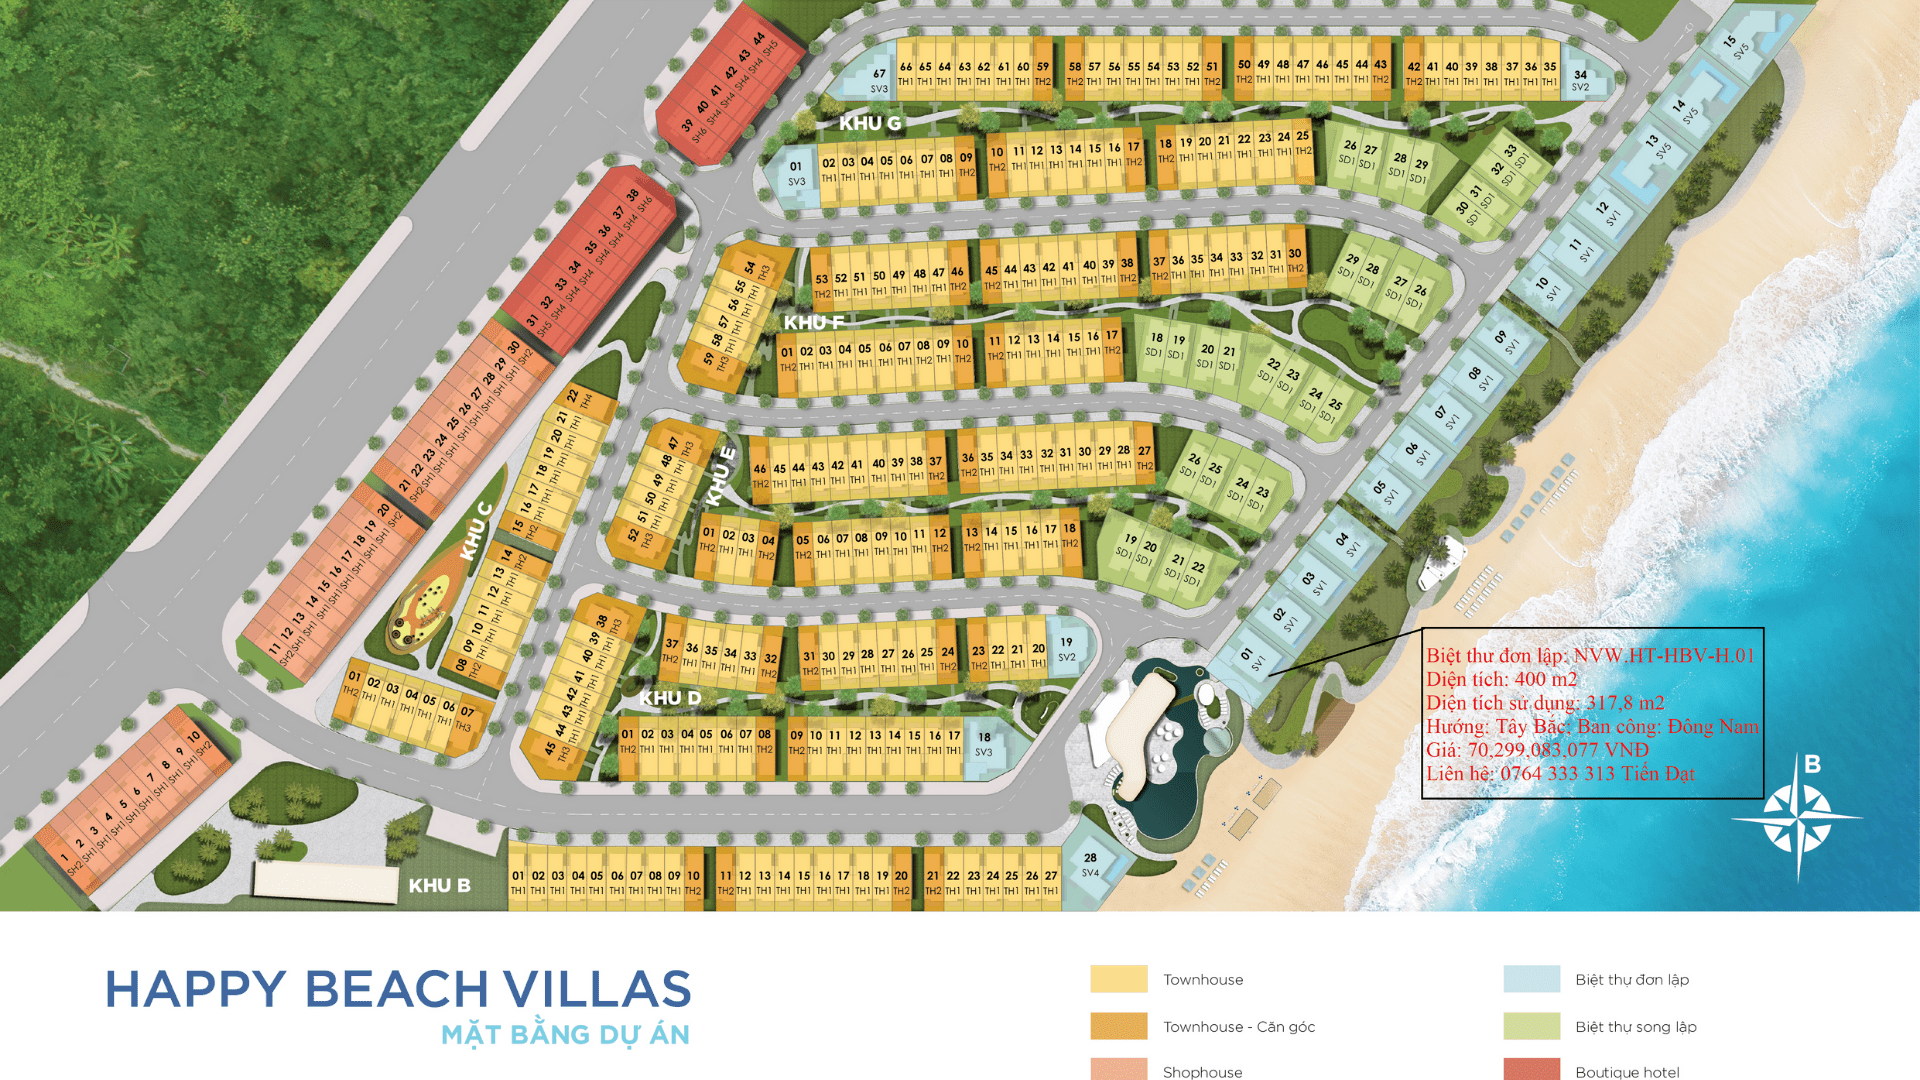 Cần bán Biệt thự dự án Happy Beach Villas Novaworld Hồ Tràm, Diện tích 400m², Giá 70.299 Tỷ - LH: 0764333313